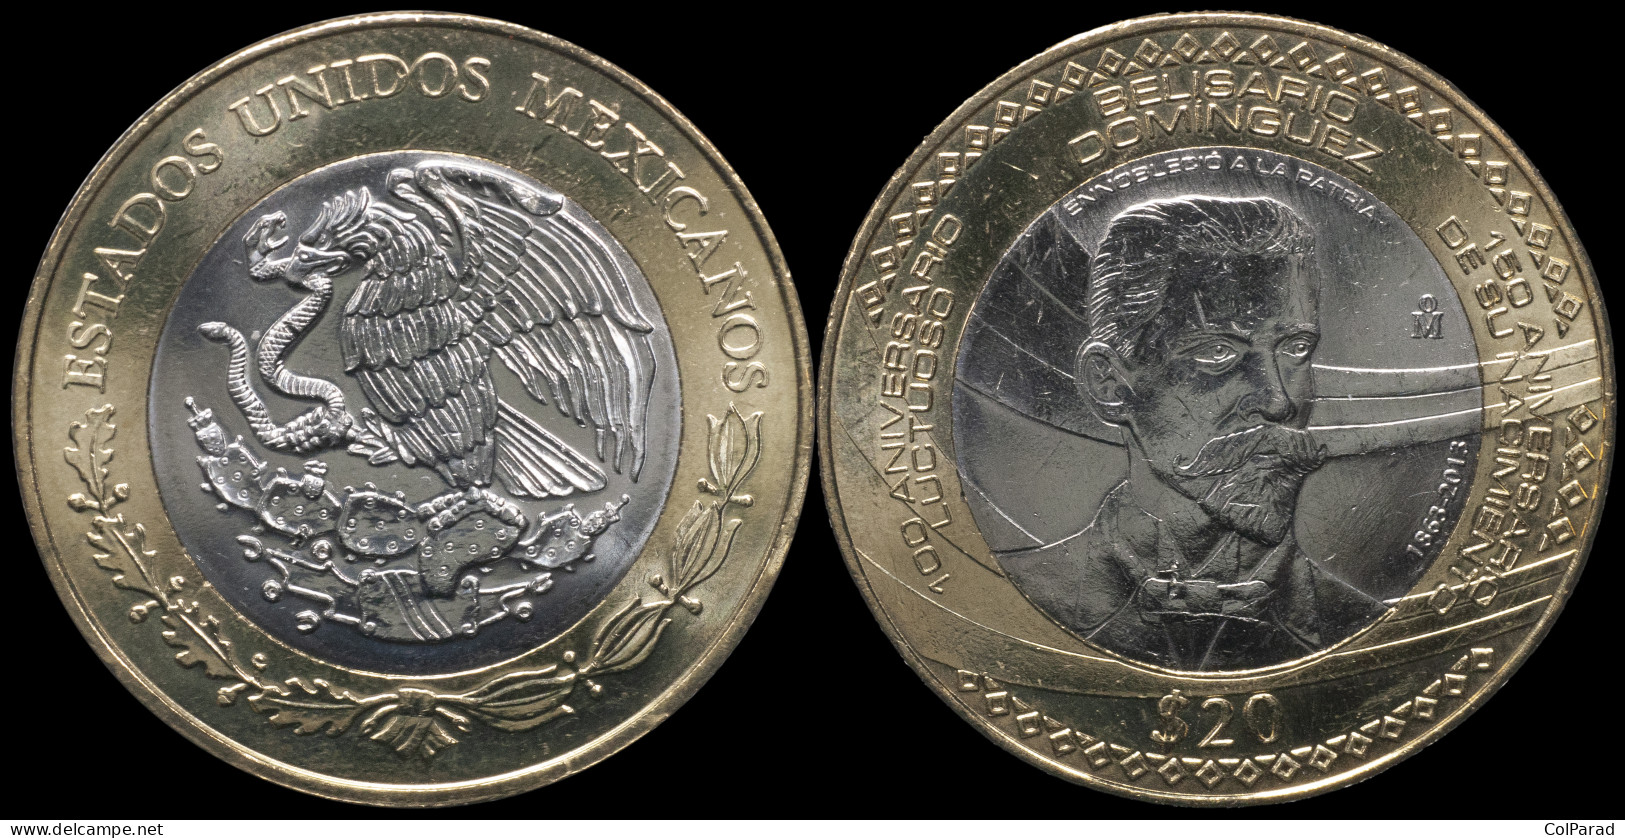 MEXICO COIN 20 PESOS - KM#970 Bi-Metallic Unc - 2013 - Belisario Domínguez - Mexique